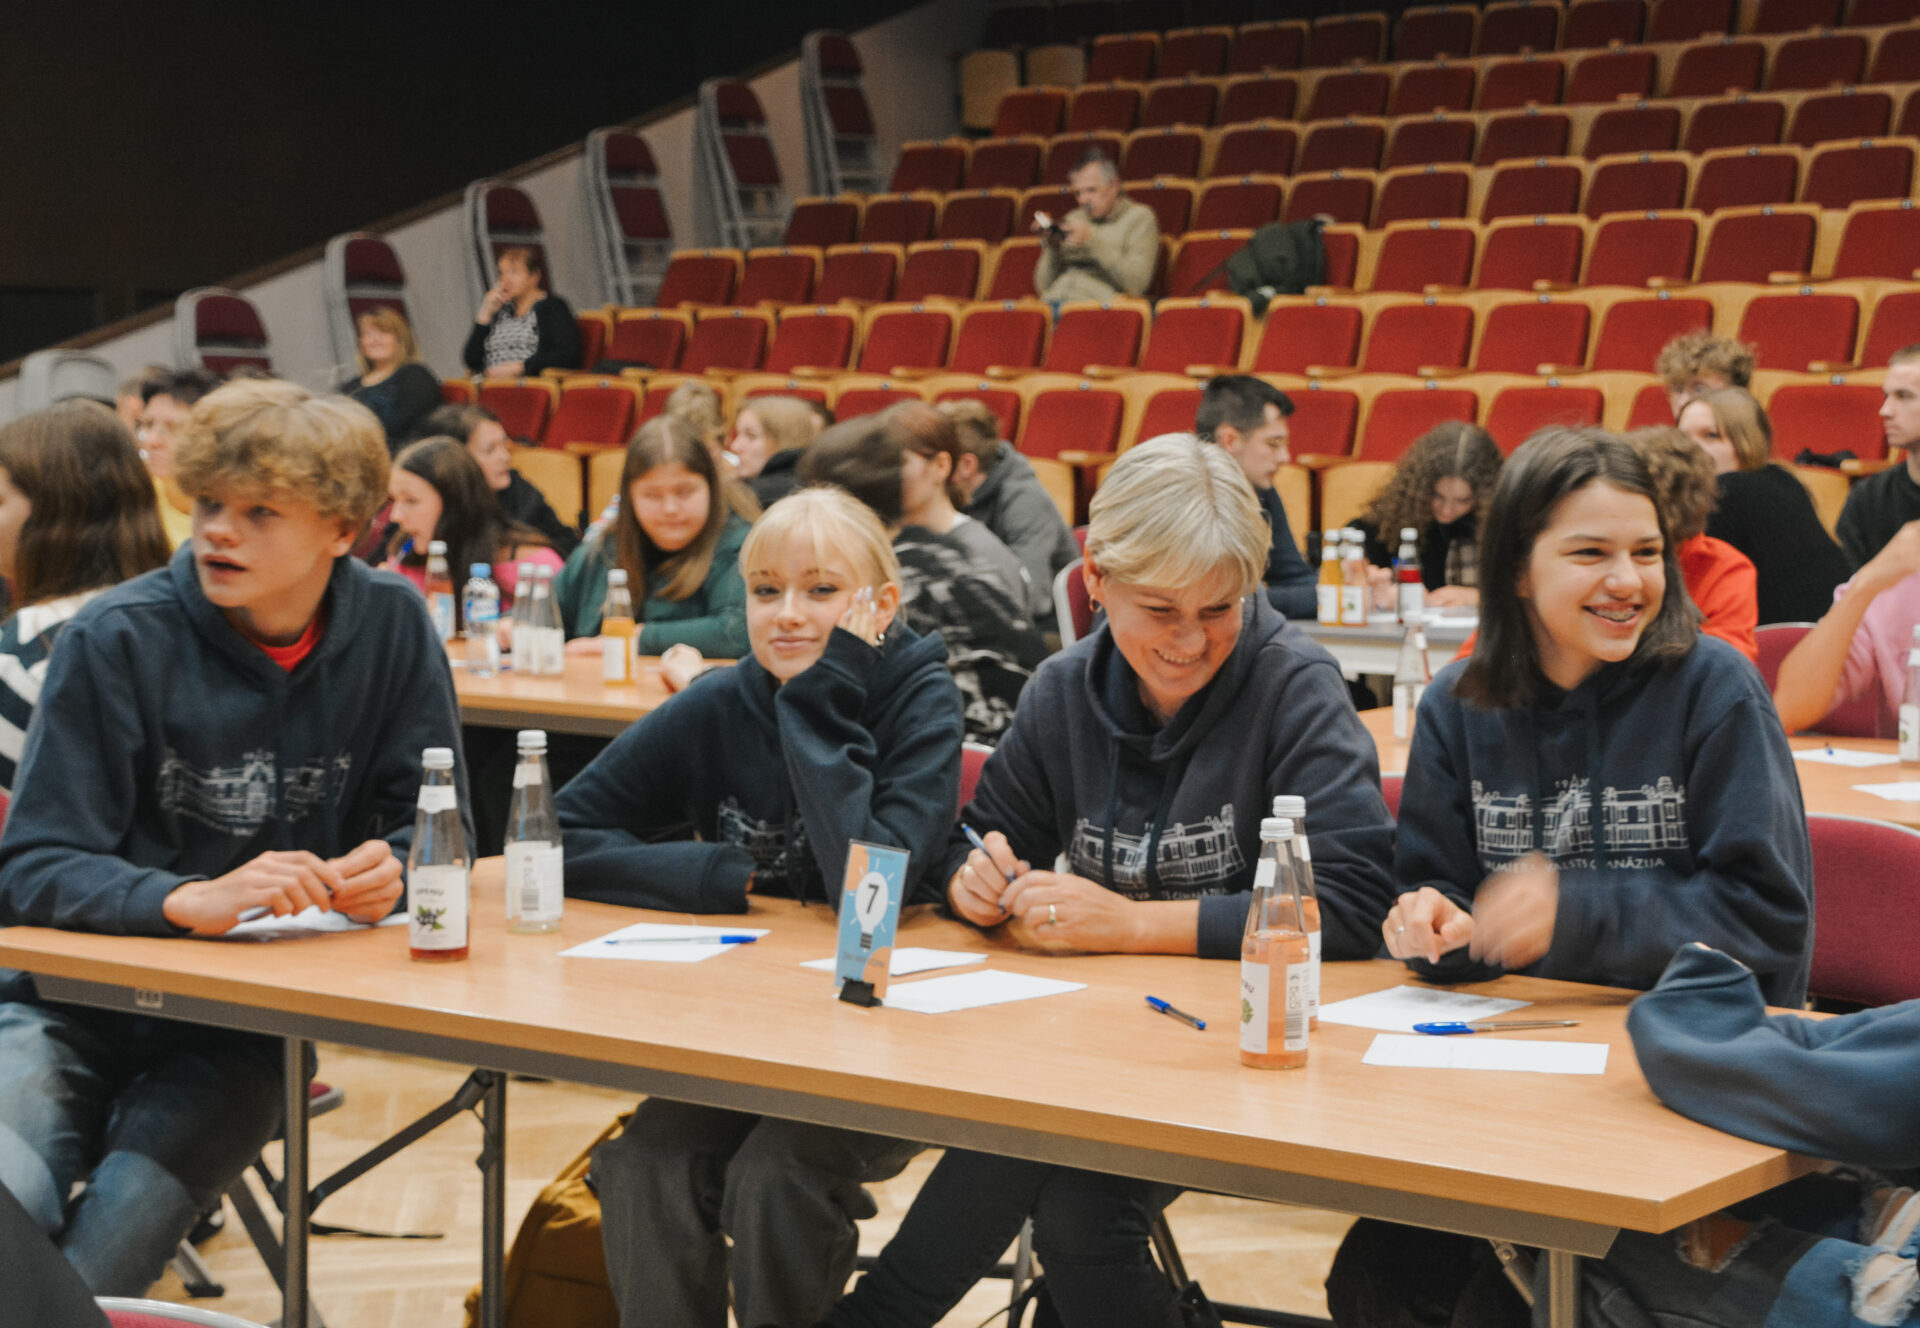 Valmieras novada izglītības iestādes piedalās erudīcijas spēlē "Zini! Mini! Uzzini!"